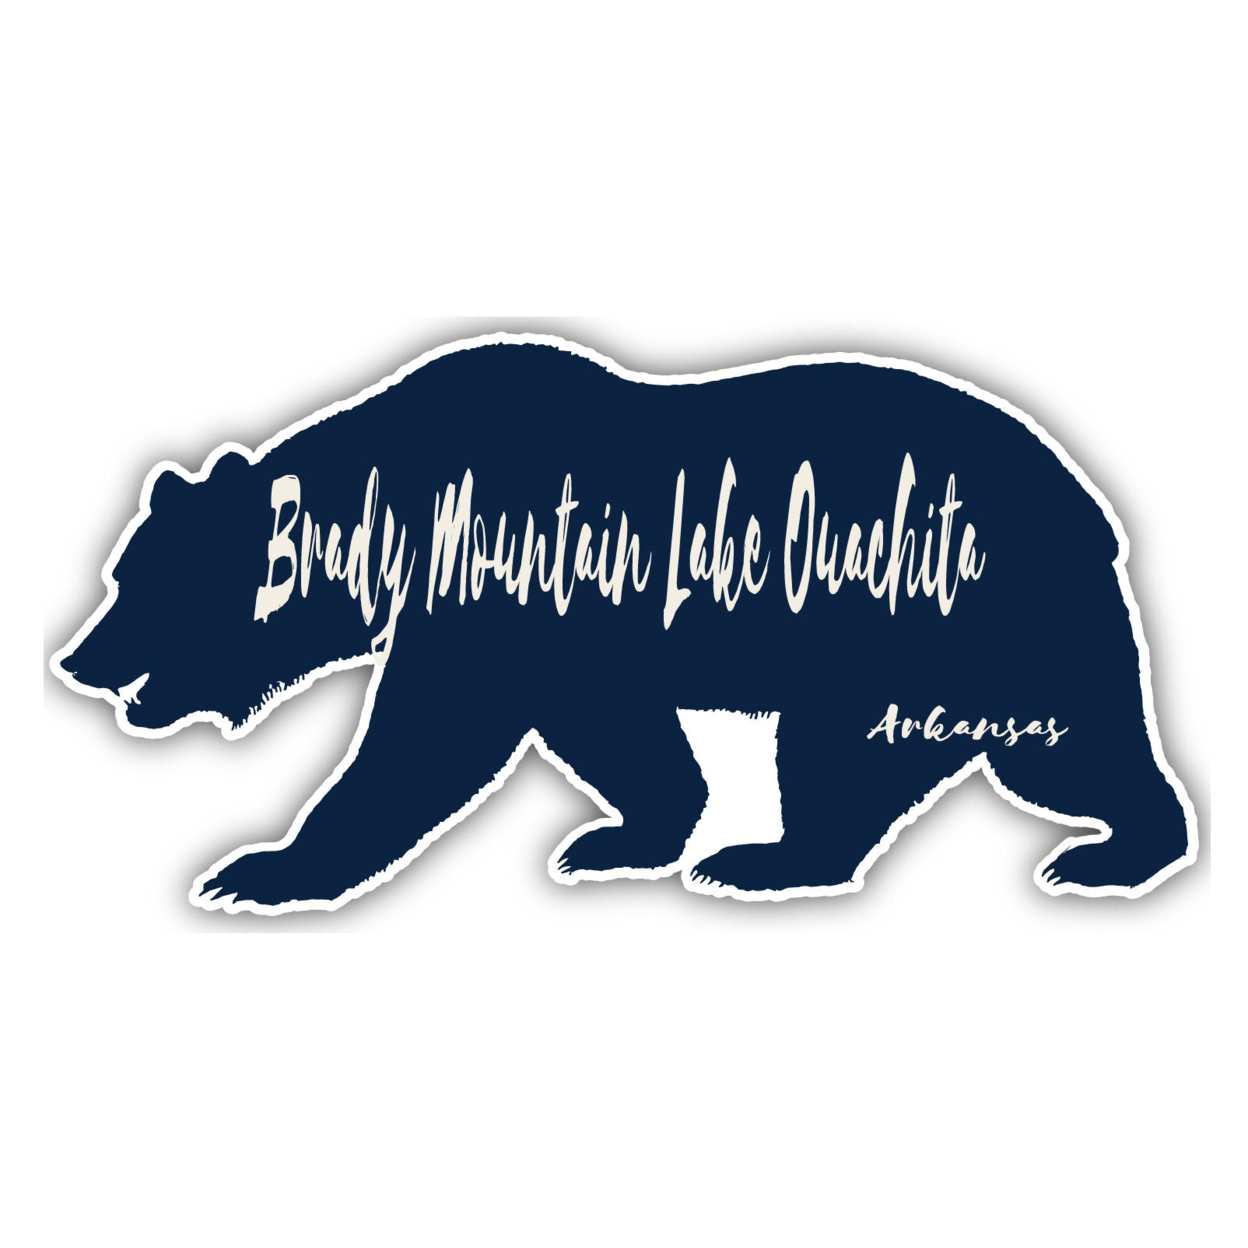 Brady Mountain Lake Ouachita Arkansas Souvenir Decorative Stickers (Choose Theme And Size) - Single Unit, 6-Inch, Bear